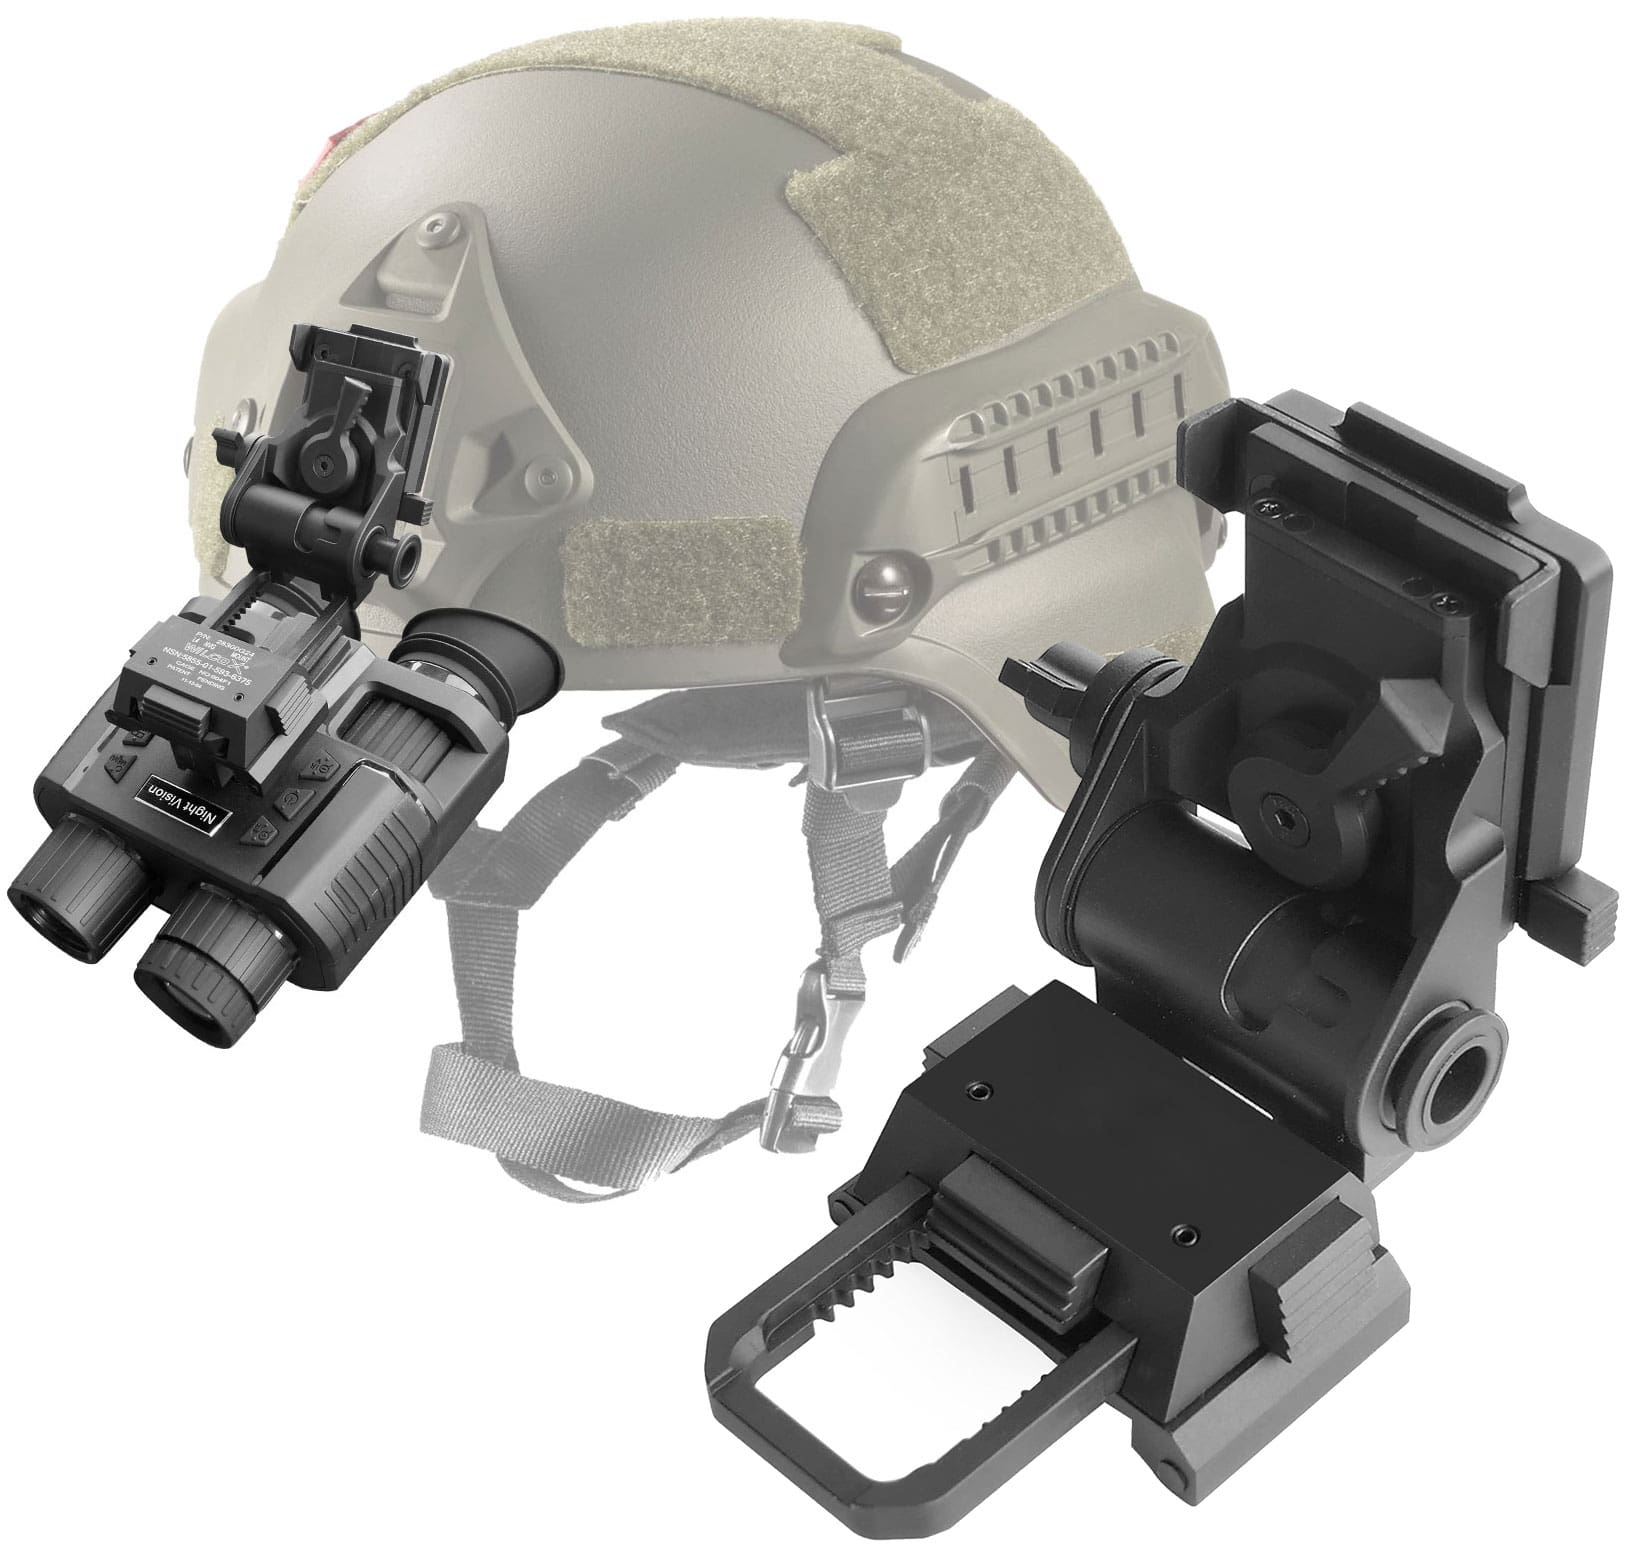 金属製 L4G24 PVS-15 PVS-18 対応 暗視ゴーグル ヘルメットマウント 商品概要 ヘルメットに暗視ゴーグル(暗視スコープ)を固定するためのメタル製のヘルメットマウントです。重量のある暗視ゴーグル(暗視スコープ)をしっかりヘルメットに固定します。PVS-15やPVS-18、GPNVG18の暗視ゴーグル(暗視スコープ)に対応。 ※PVS-14はマウント形状が異なるため装着できません。また、ACH、PASGT、MICH、M88などのヘルメットにも対応します。 素材 ・信用性の高いメタル製のマウントです。重量のある高い酸化耐性を持つアルミニウム合金のため耐久性が非常に優れています。表面は、特殊なプロセスにより塗装されていて、表面は滑らかで色あせません。アルミニウム合金のため、重量はなんど160gと軽量です。このヘルメットと暗視ゴーグル(暗視スコープ)を頭に装着するには、軽量性が非常に重要です。 ベネフィット ・レバーとボタンの操作で、暗視ゴーグル(暗視スコープ)の上下位置の高さのスライド機能、眼との位置を調整する前後のスライド機能、角度の微調整機能がご利用可能です。ヘルメットを被ったまま、暗視ゴーグル(暗視スコープ)の位置の調整が可能です。 サイズと重要 ・重量は160g、大きさは最大横幅65mm、最大長さ112mm、最大厚み33mmです。使用しないときは折りたたんでプラスチックケースに収納可能です。 ご注意 ・ヘルメットや暗視ゴーグル(暗視スコープ)によっては、取り付けの際には加工調節が必要となる場合がございます。予めご了承下さい。 【関連キーワード】 暗視スコープ 暗視カメラ 暗視装置 ナイトスコープ スコープ ナイトビジョン ゴーグル ヘルメット マウント エアガン バッテリー 雨 釣り 動物観察 サバイバルゲーム サバゲー ハンディー 軍用 カメラ 赤外線 望遠 録画 SD録画 動画 夜間 暗視 撮影 軍用 MICH M88 FASTヘルメット エアガン アクセサリー【選択項目の追加料金について】 選択項目の追加分の価格については、買いものカゴや楽天市場から届きます初回の自動サンクスメールに反映されません。 当店で処理後、2回目に届くサンクスメールに反映されます。 【領収書の発行について】 領収書の発行については、注文履歴の中に「領収書発行する」ボタンがございますので、そこから発行してプリントして頂けるようお願いします。 紙での領収書については、ご注文時のみお受け致します。ご注文時以後の発行は、致しませんので御了承くださいませ。 クレジットカード購入(5万円以上)による領収書発行について、弊社では収入印紙の貼り付け発行はしておりません。 代金引換でのご注文の場合は、発送伝票控えが領収書となります。 【お客様都合による交換・返品】 商品到着日から起算して1週間以内にご連絡を頂いた場合に限り、返品・交換対応をさせて頂きます。 明らかに使用された形跡がみられるものについては交換・返品対応をお断りさせて頂きます。 商品未使用(新品)の状態かつ、商品到着時に同梱されていた全て(付属品、商品パッケージ、緩衝材、説明書、お買い上げ明細書など)が揃っていることが条件となります。 返品・交換にかかる送料や発送送料、代引手数料、振込手数料はお客様のご負担となります。 送料無料商品については、発送時の送料もお客様のご負担となります。 【沖縄・離島・一部地域への送料と中継料金】 沖縄・離島・一部地域へご発送で、9,800円(税込)未満のご注文については送料と中継料金が発生します。 送料と中継料金はご注文後、加算させて頂きます。2回目に届くサンクスメールにてご確認頂けます。予めご了承ください。